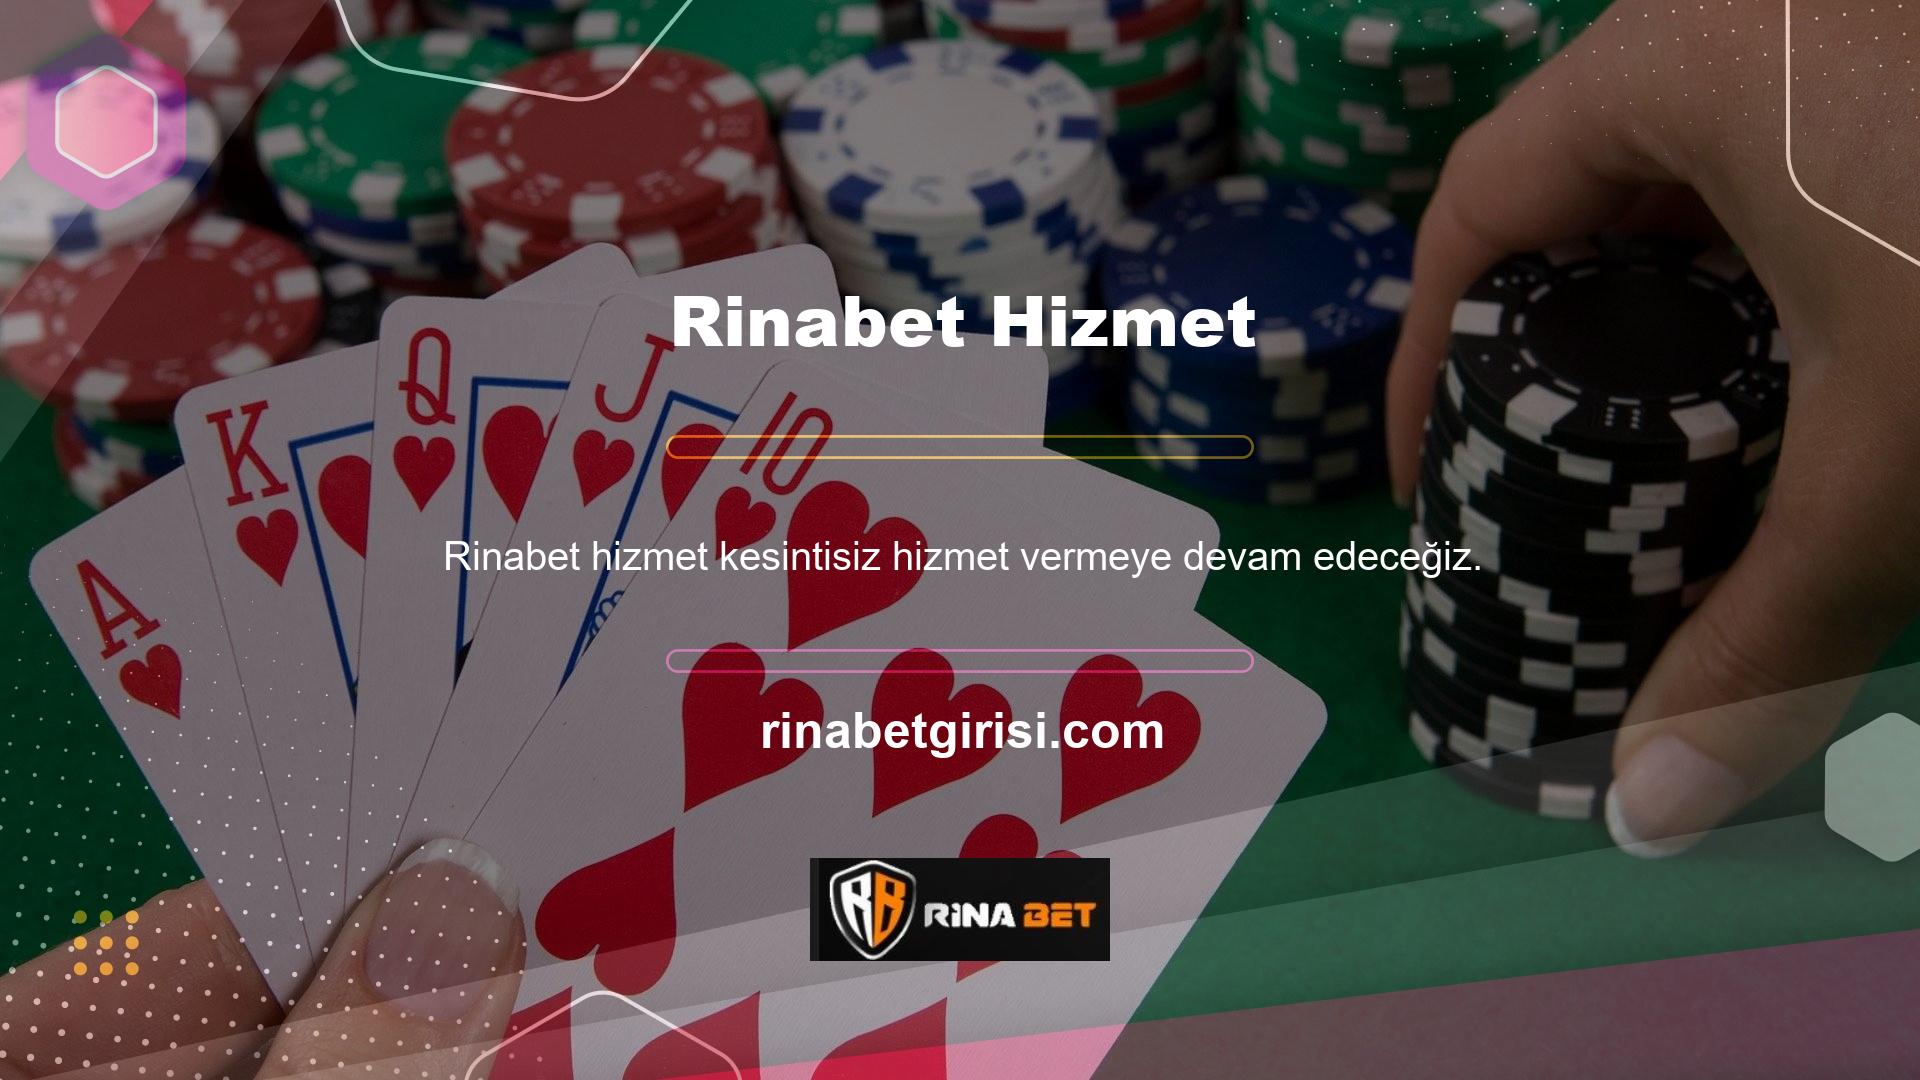 Rinabet bahis sitesine internet bağlantısı olan herhangi bir kanaldan erişin ve hayallerinize daha da yaklaşmak için canlı casinoda ve canlı sporlarda bahis yapmaya devam edin